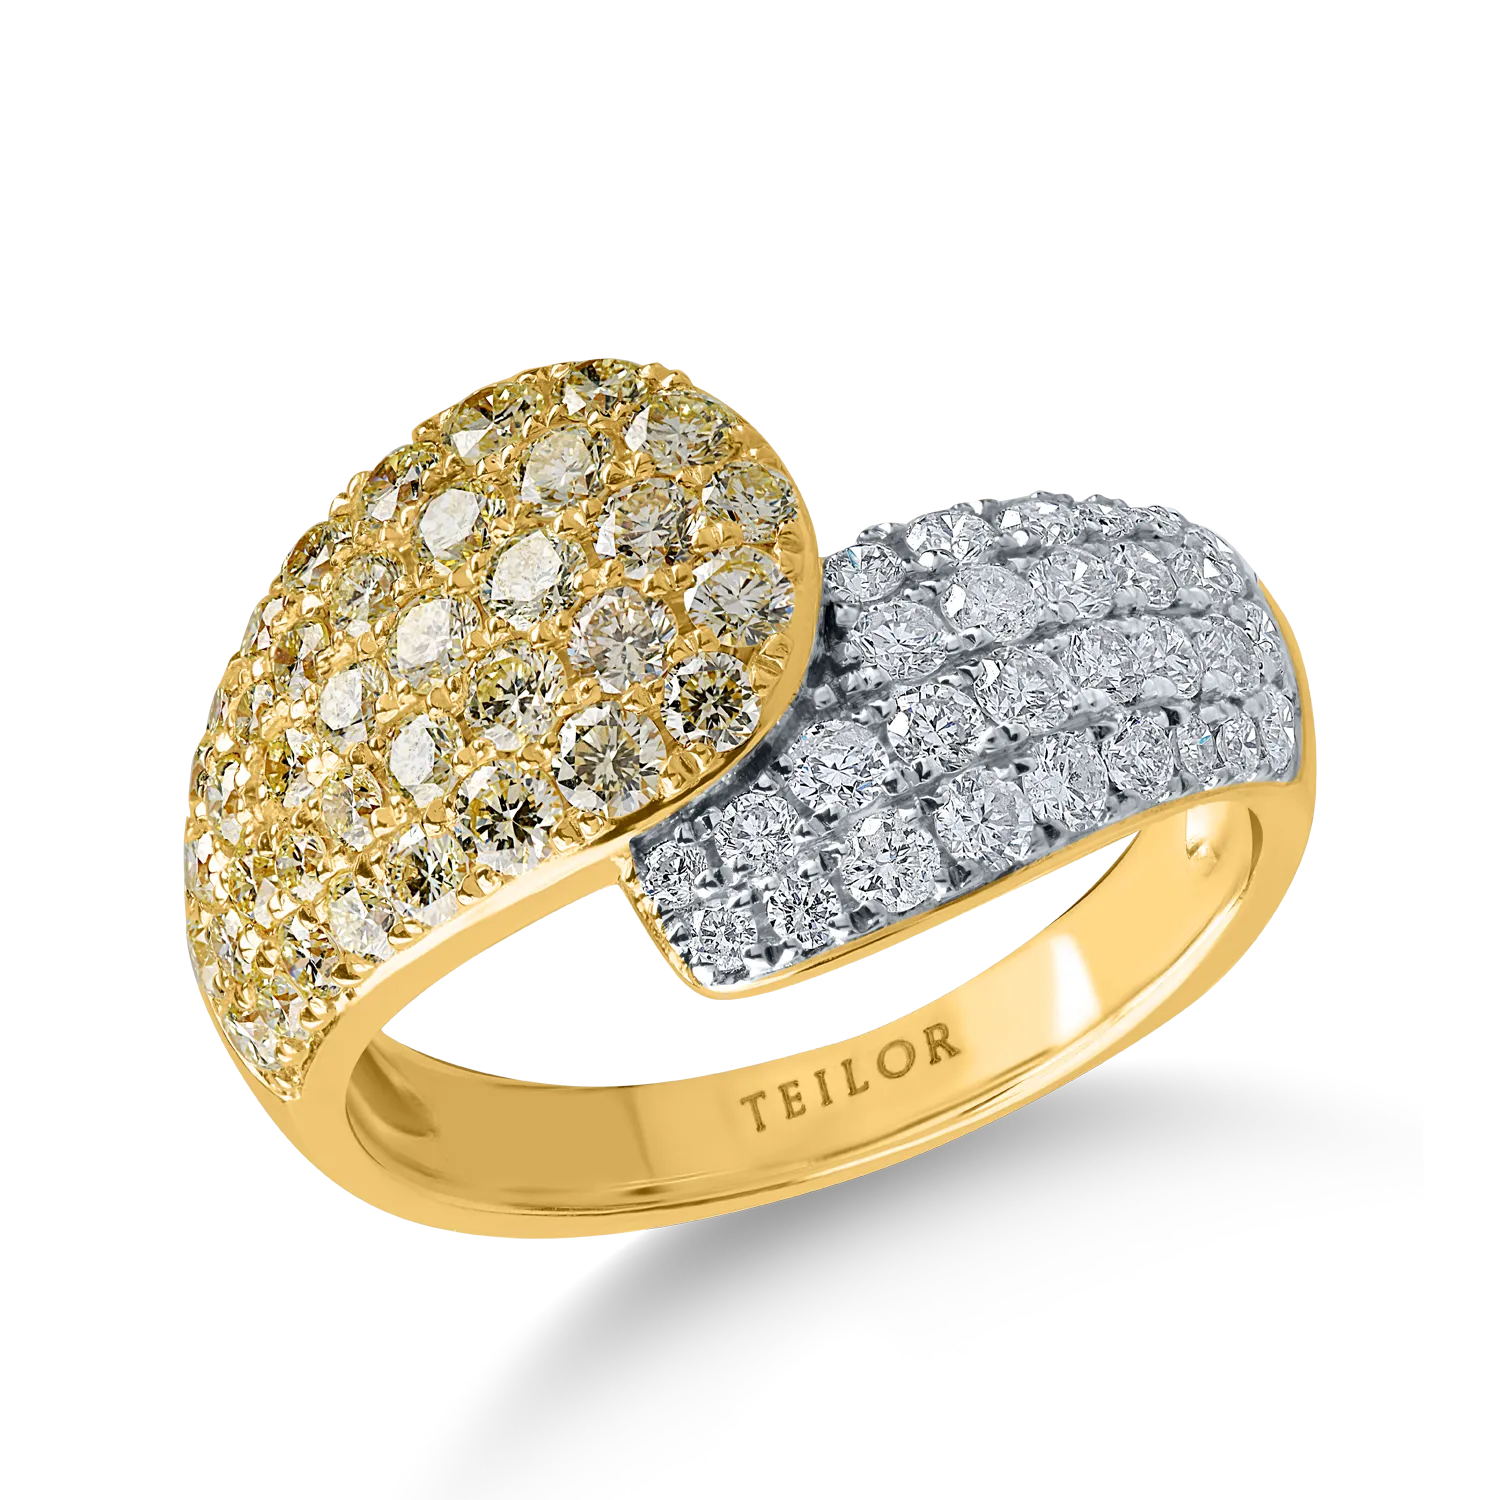 Inel din aur alb-galben cu diamante galbene de 1ct si diamante incolore de 0.5ct